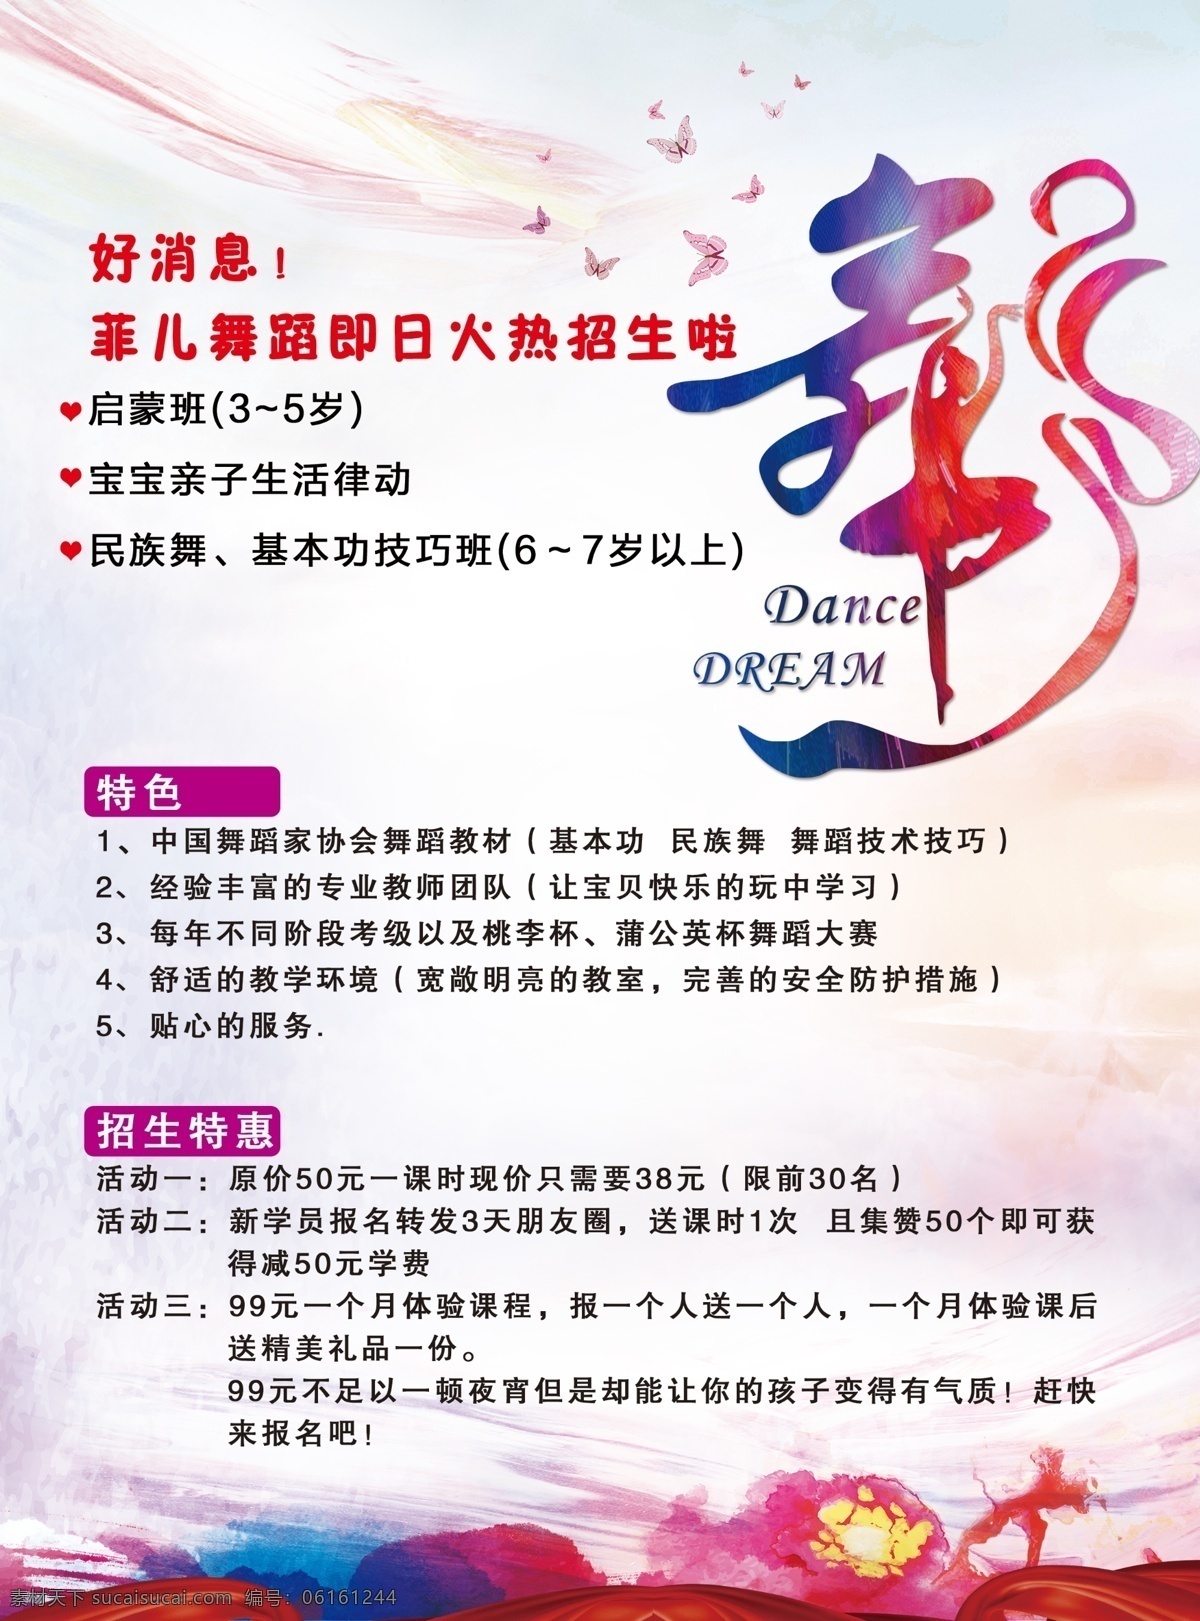 舞蹈宣传单 舞字 舞蹈招生 芭蕾舞 儿童舞蹈班 舞蹈班宣传单 传单画册 dm宣传单